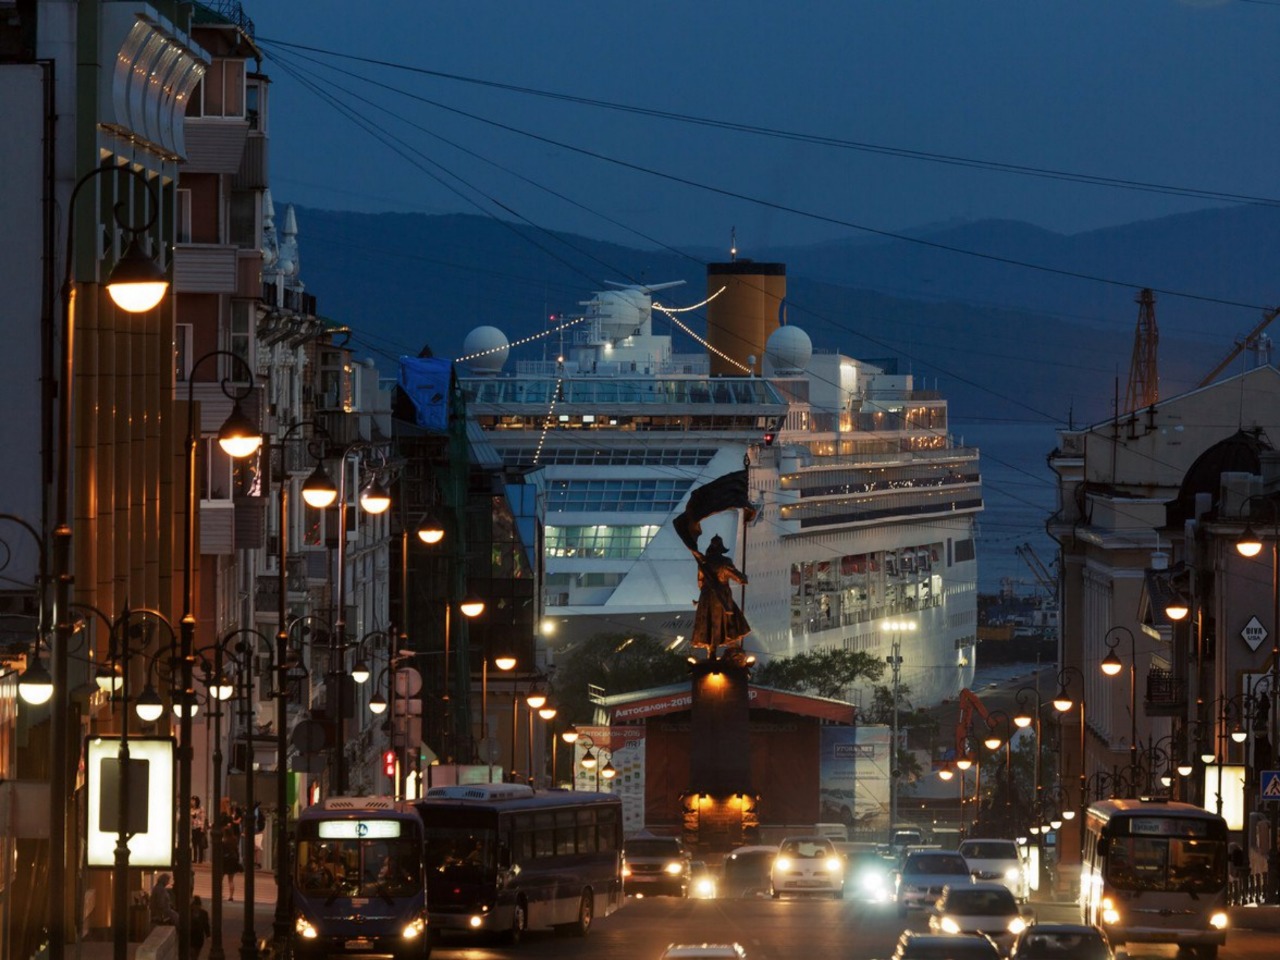 Обзорный променад "Welcome to Vladivostok!" | Цена 6000₽, отзывы, описание экскурсии